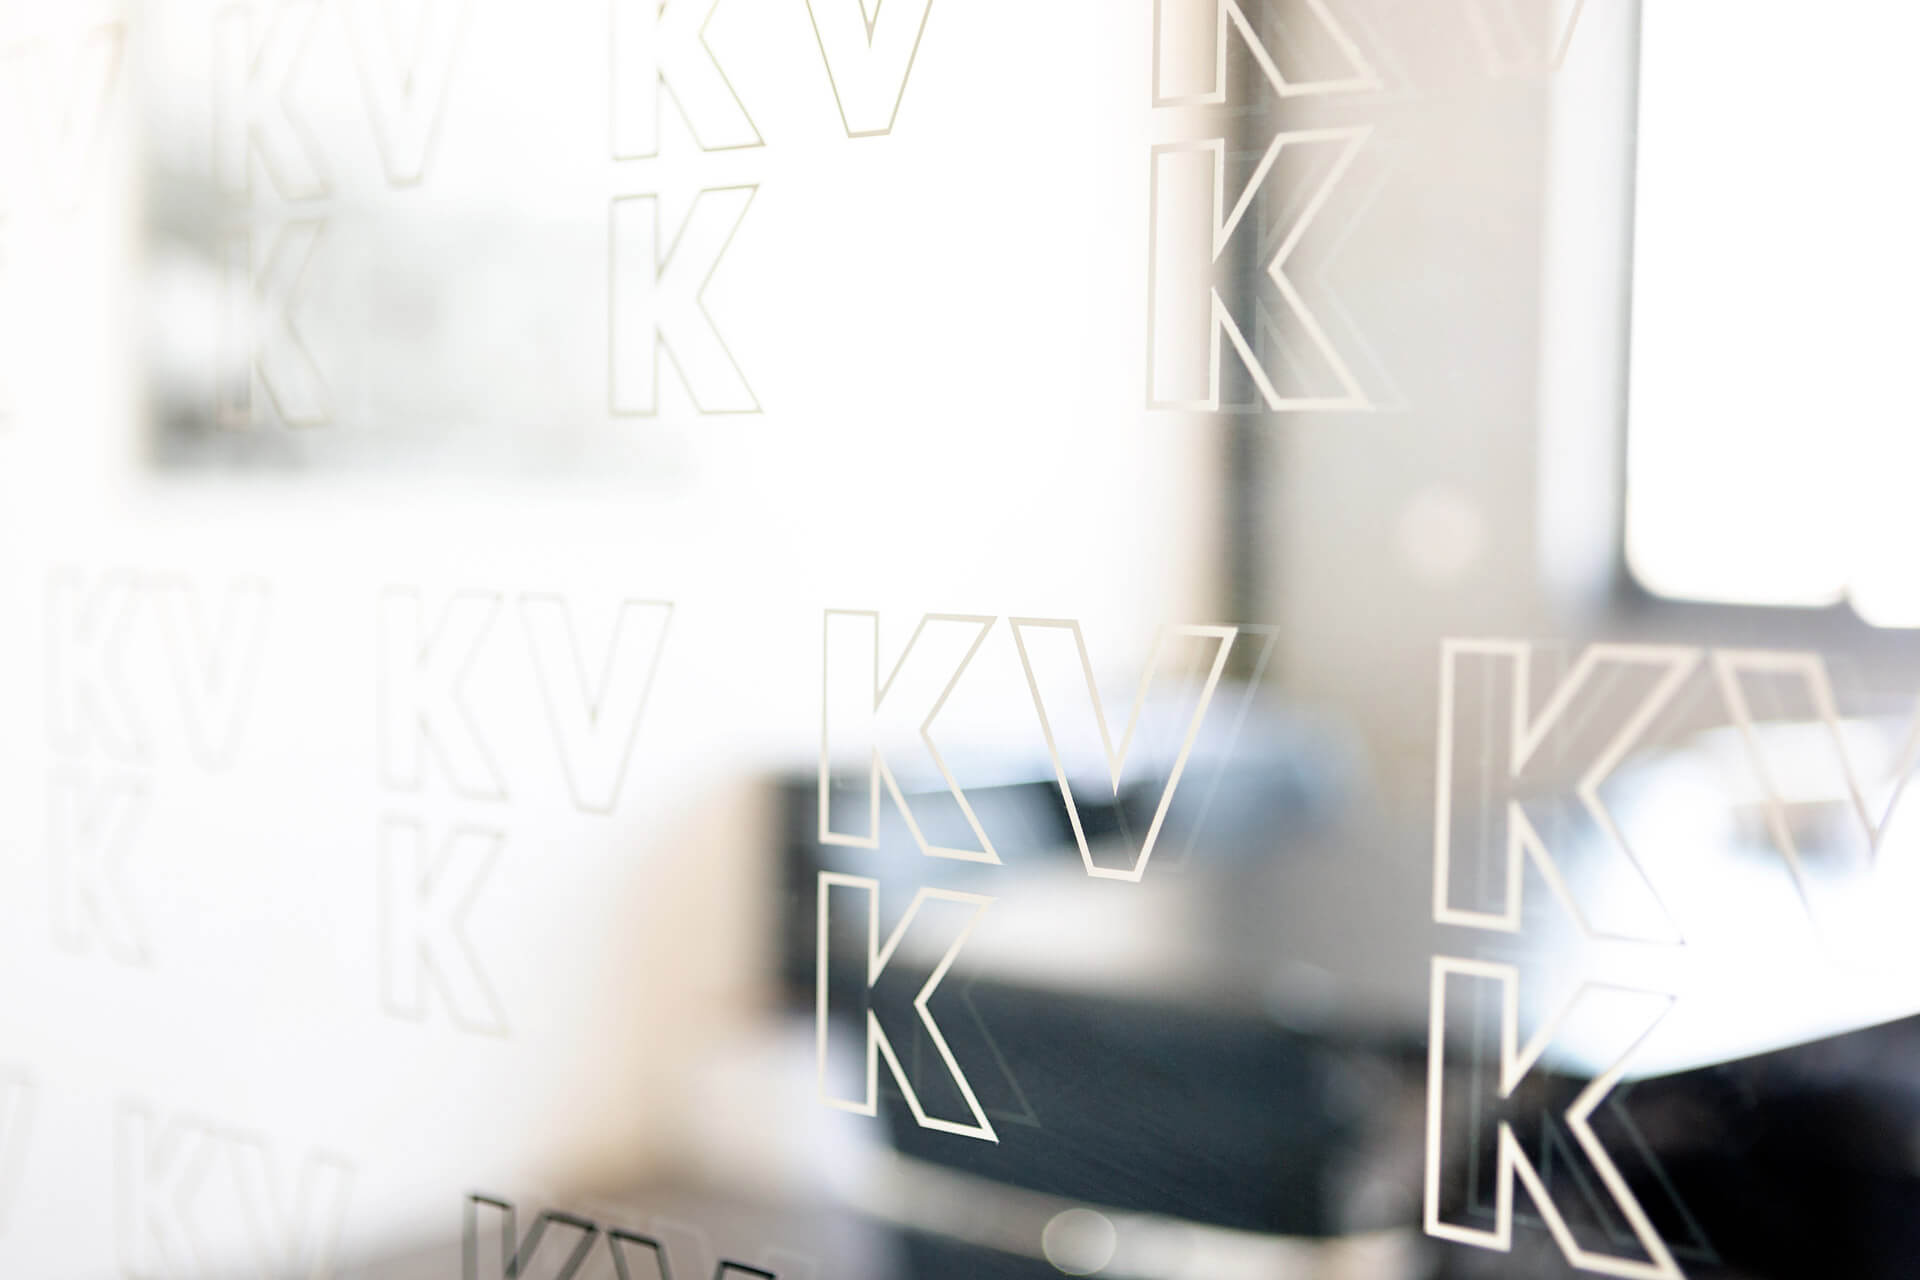 Publikation Fichtner und KVK – Gewinnoptimiert über Netzinvestitionen entscheiden